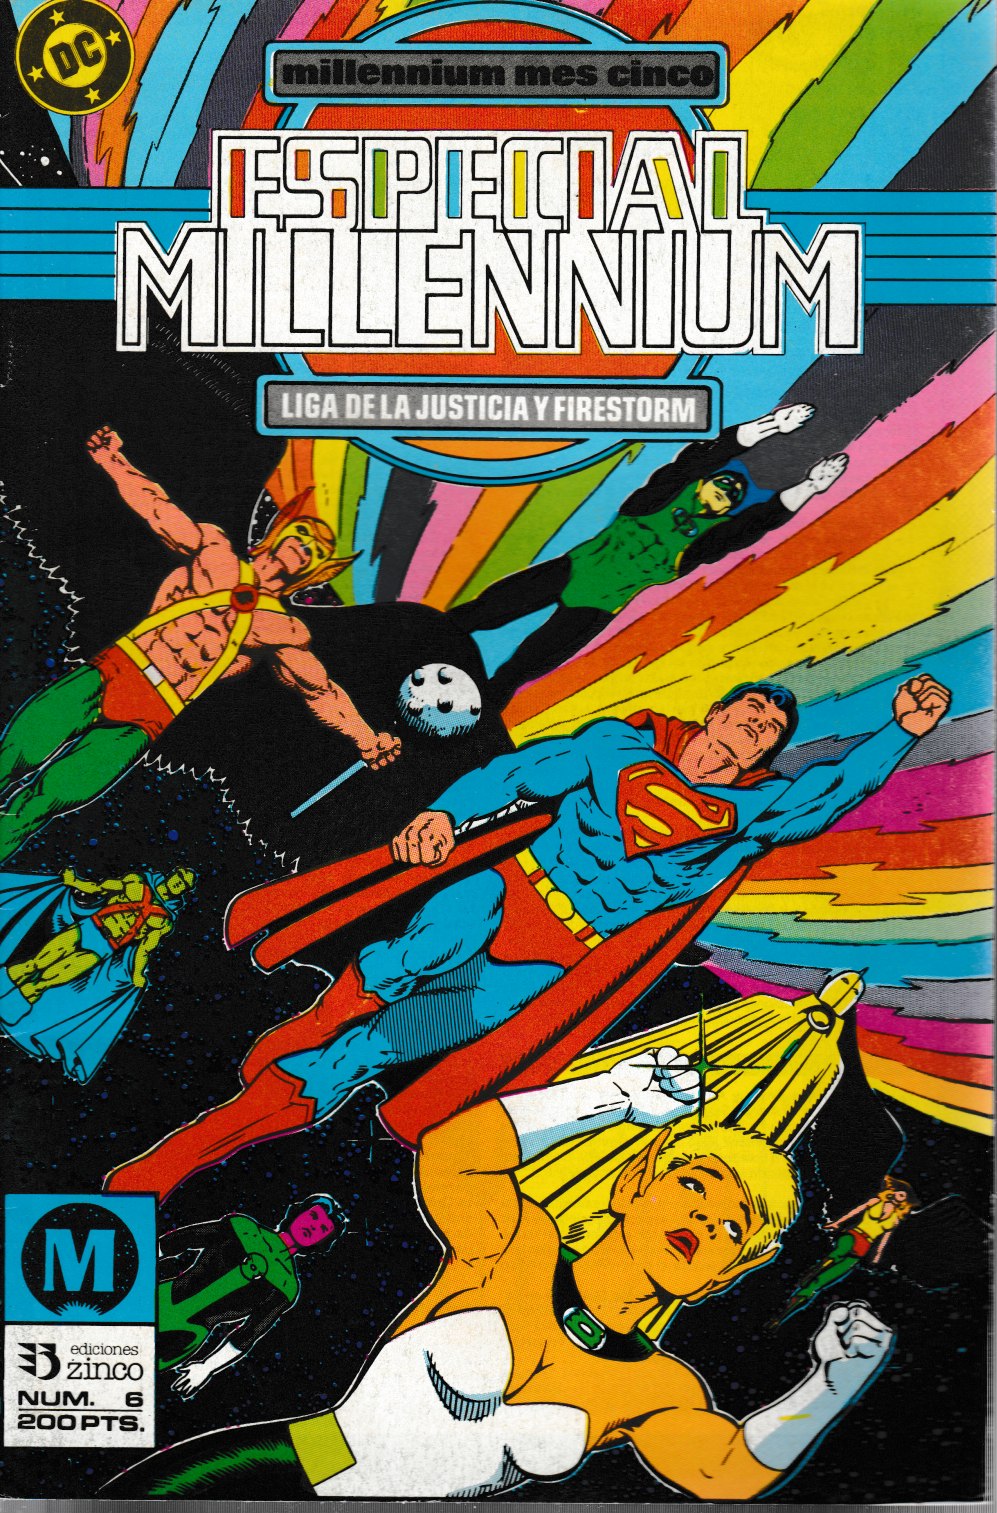 Especial Millennium. Zinco 1988. Nº 6 La Liga de la Justicia y Firestorm